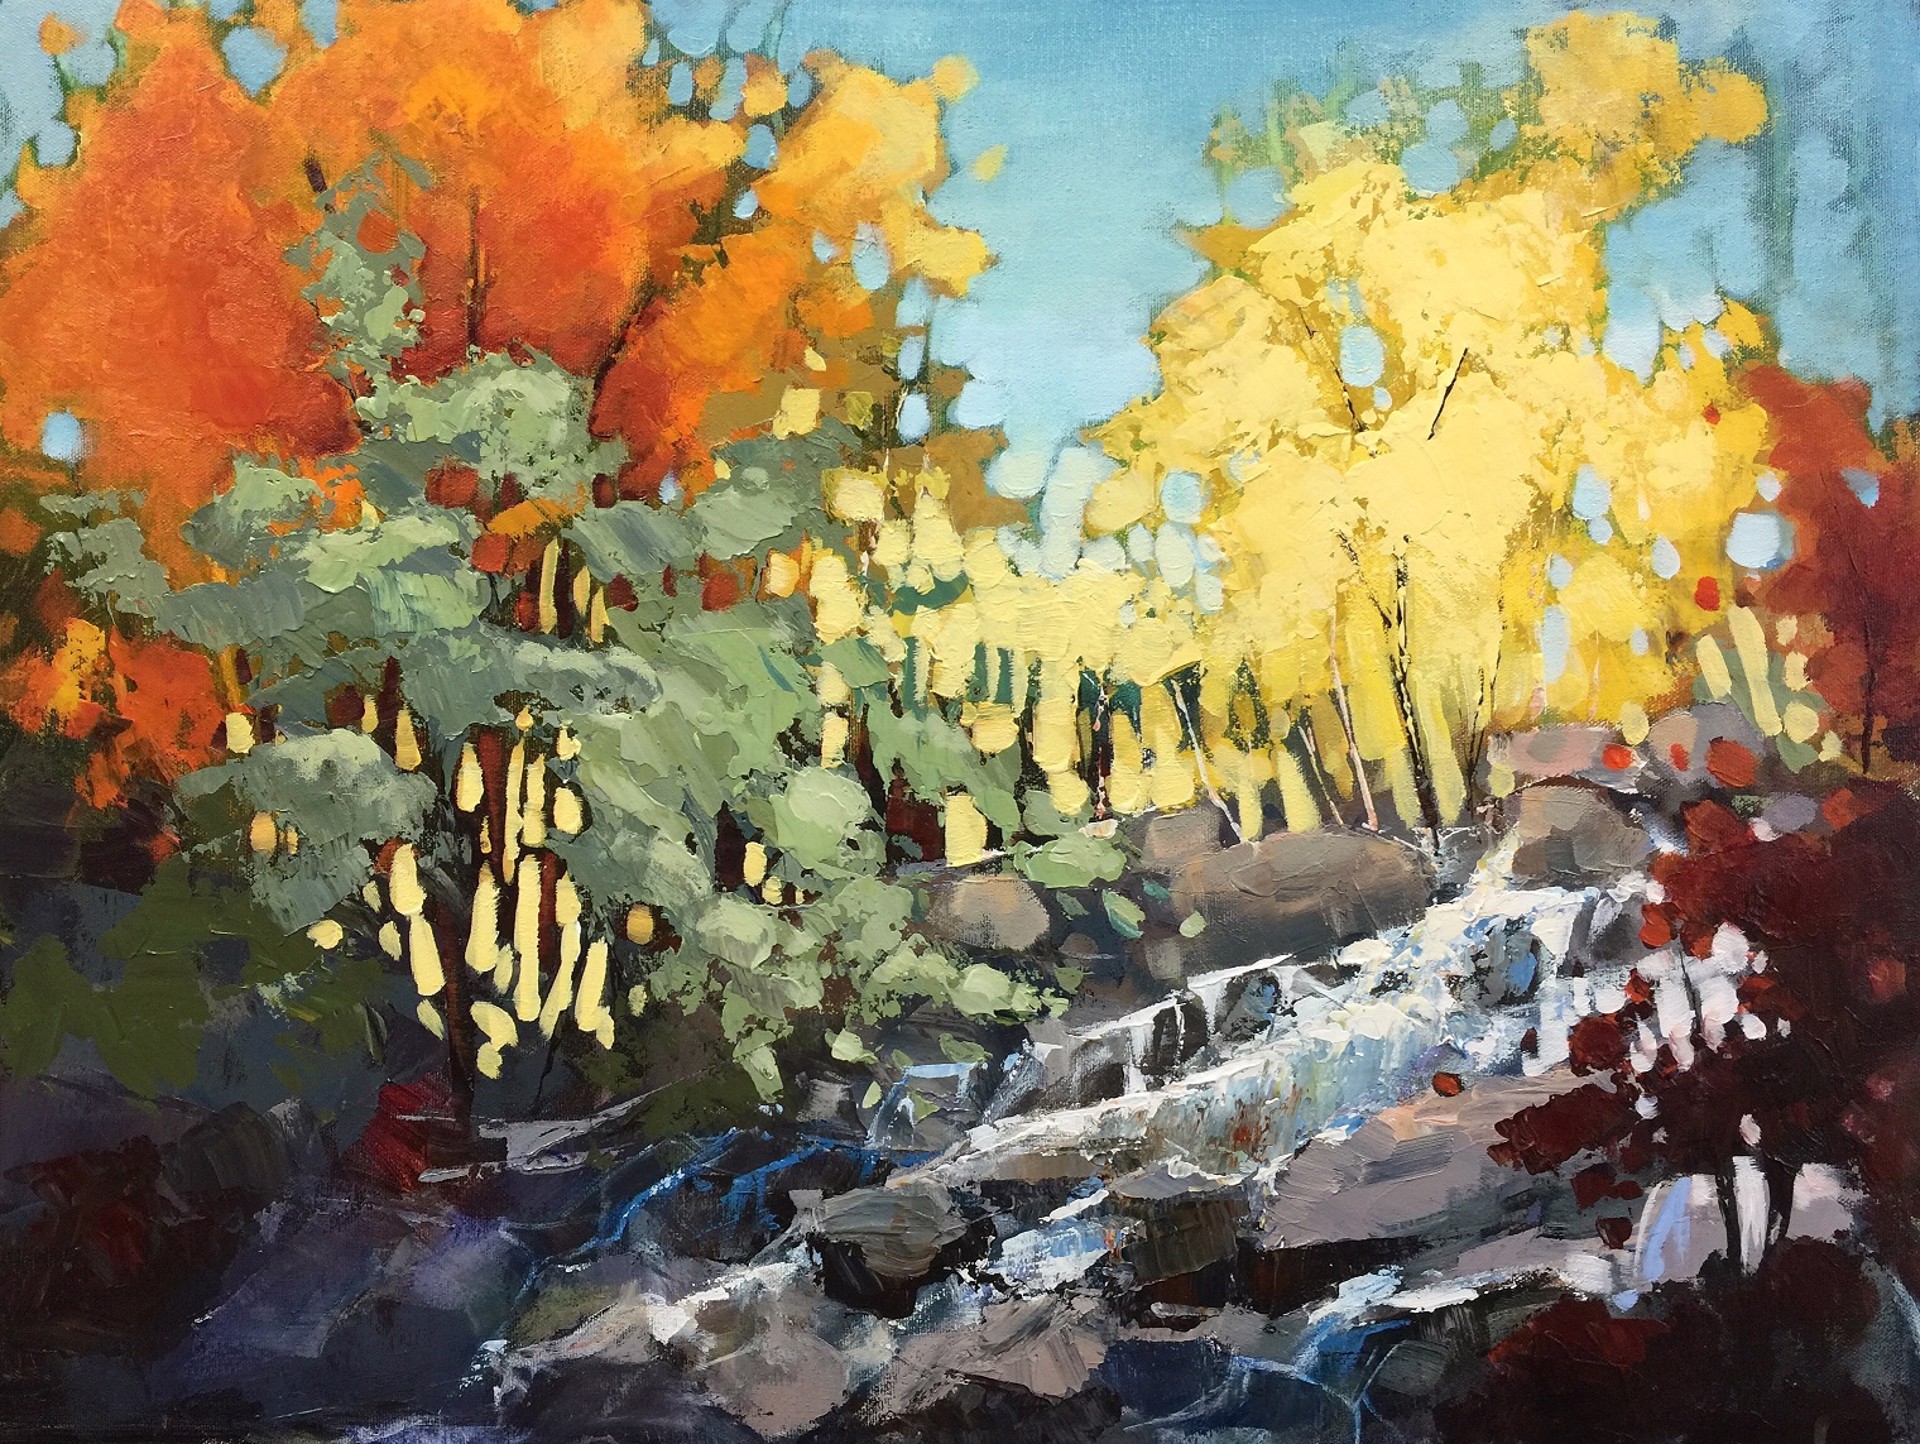 Autumn Fuse by Linda Wilder